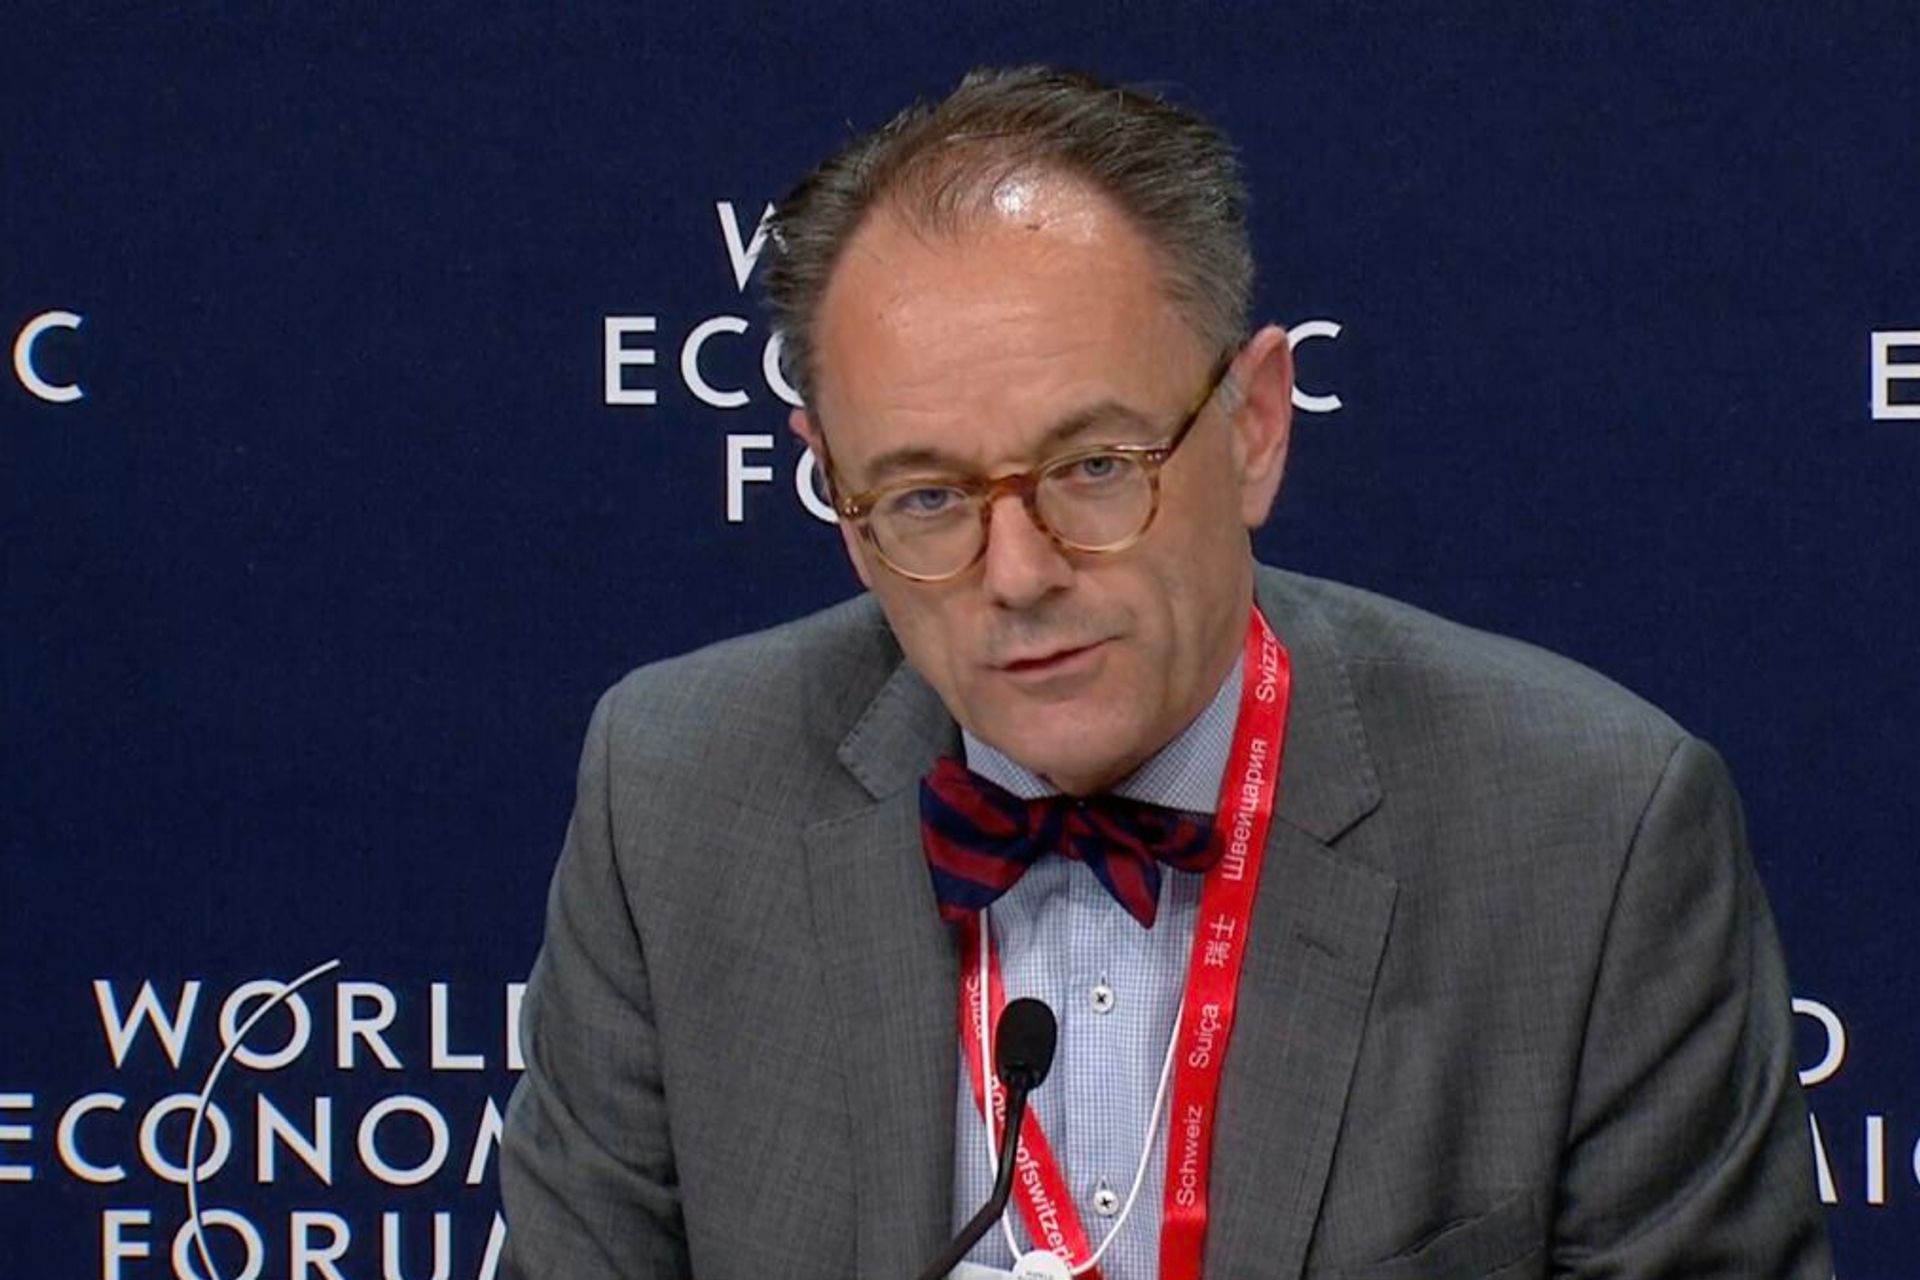 Benedikt Wechsler és ambaixador i cap de la Divisió de Digitalització del Departament Federal d'Afers Exteriors (DFAE) de la Confederació Suïssa.